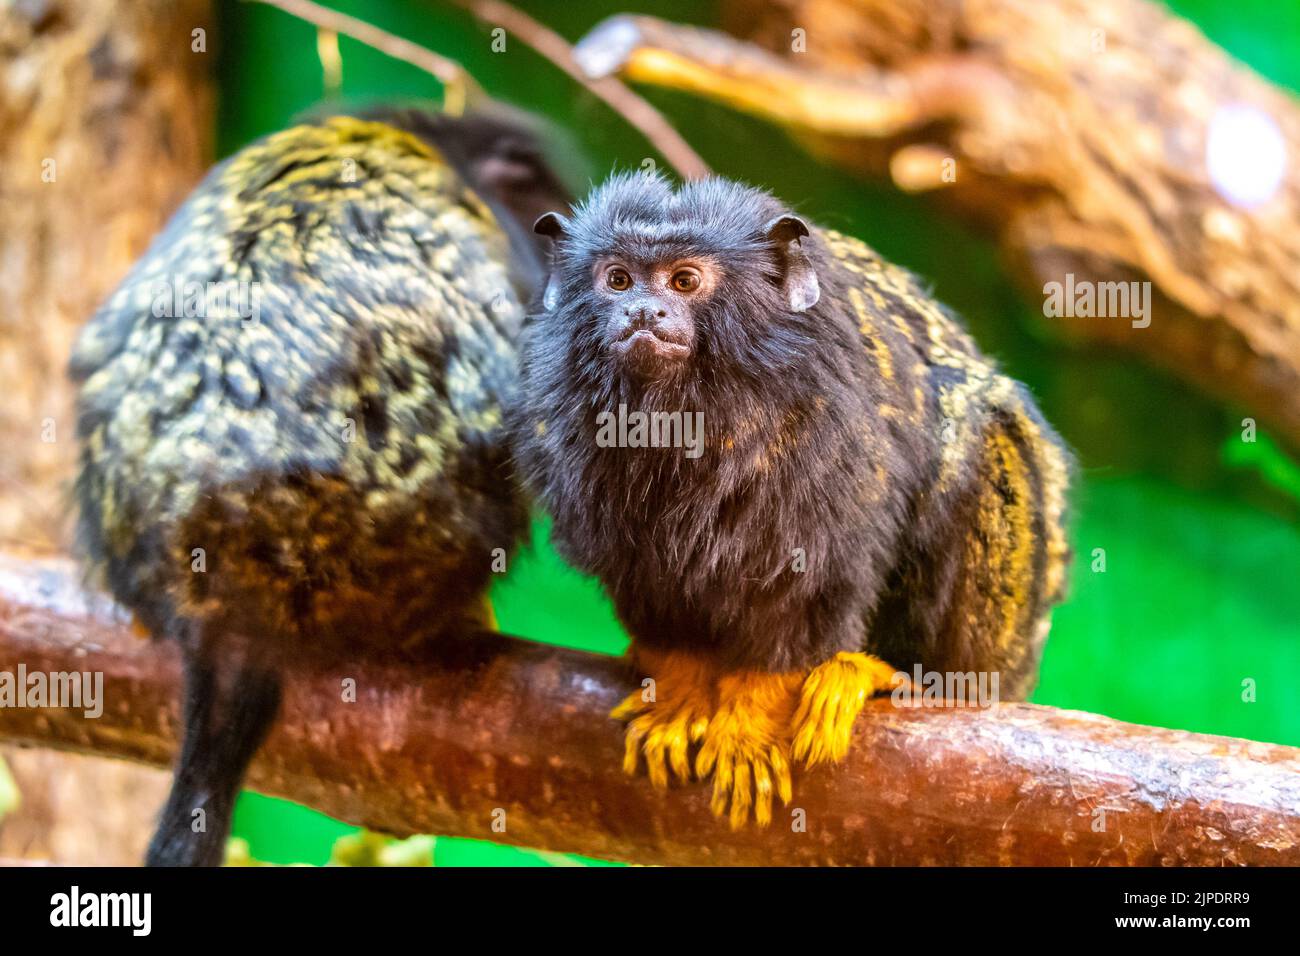 Auf dem Ast ruht der goldhändige Tamarin-Affe (Saguinus midas). Detail aussehen Primaten Tier. Kleine Säugetiere, die natürlich in tropischem ra leben Stockfoto